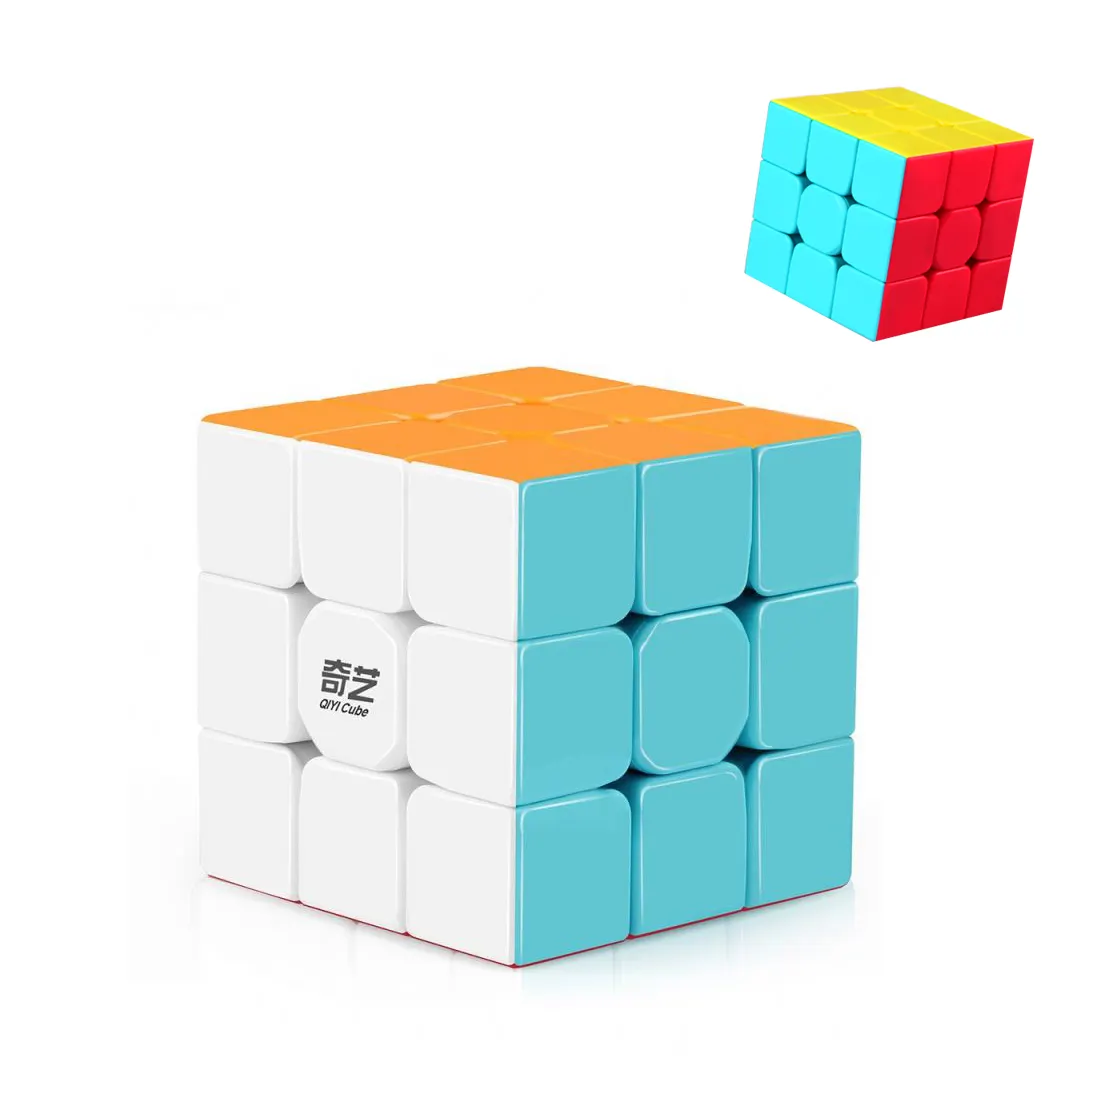 Qiyi Mainan Kubus Magic Cube Anak-anak, Mainan Puzzle Kubus Magic 3X3X3 Kecepatan Berubah Mudah dan Tahan Lama untuk Anak-anak EXW